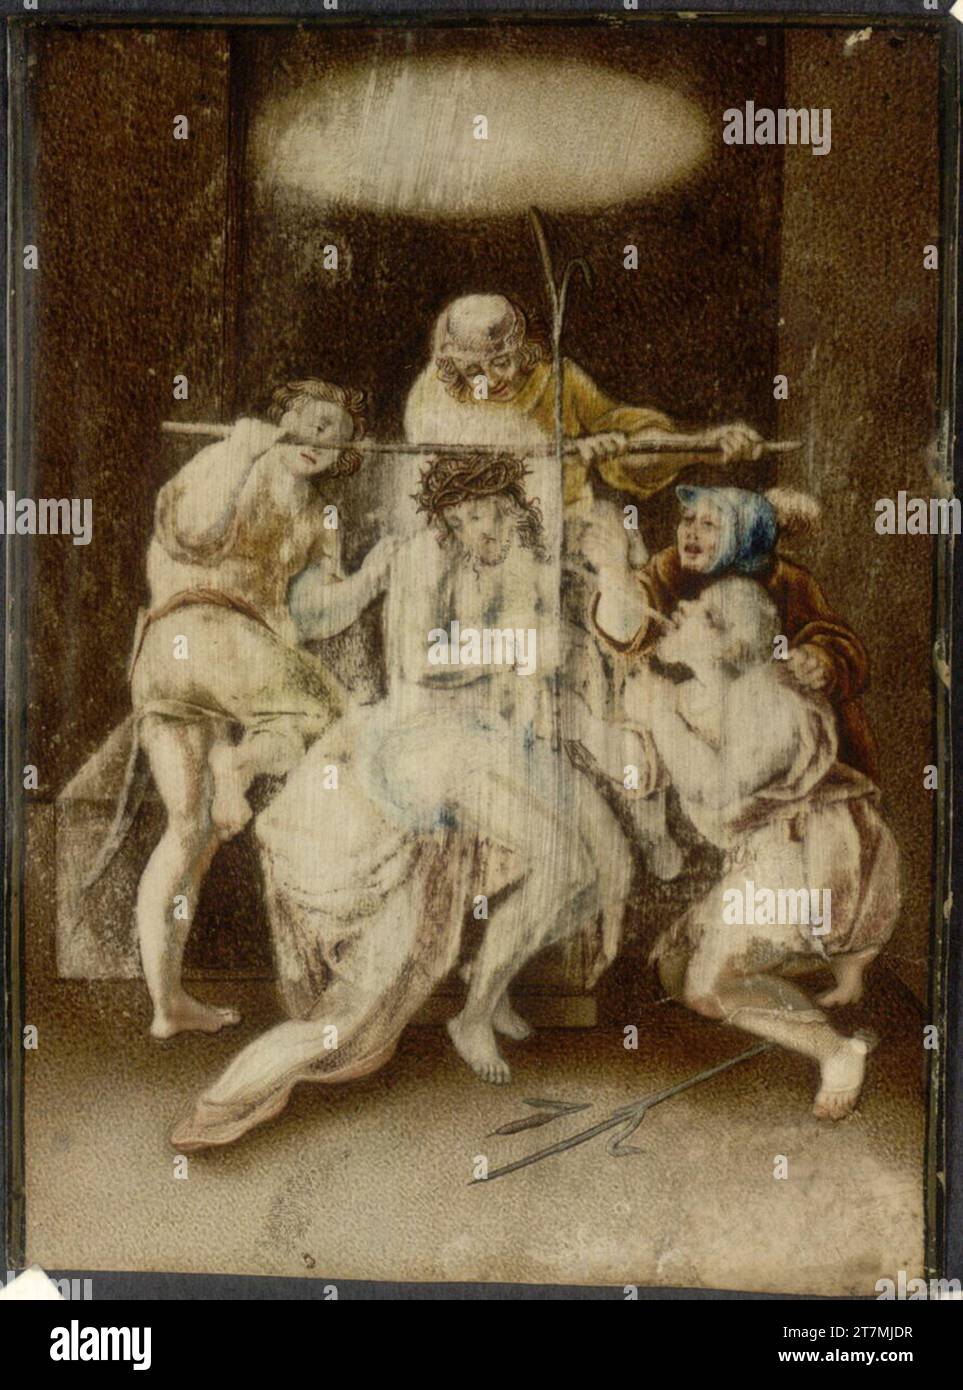 Coronation anonyme de Collection du Christ, image de dévotion sur parchemin. Aquarell, Pergament 1700-1800, 1700/1800 Banque D'Images